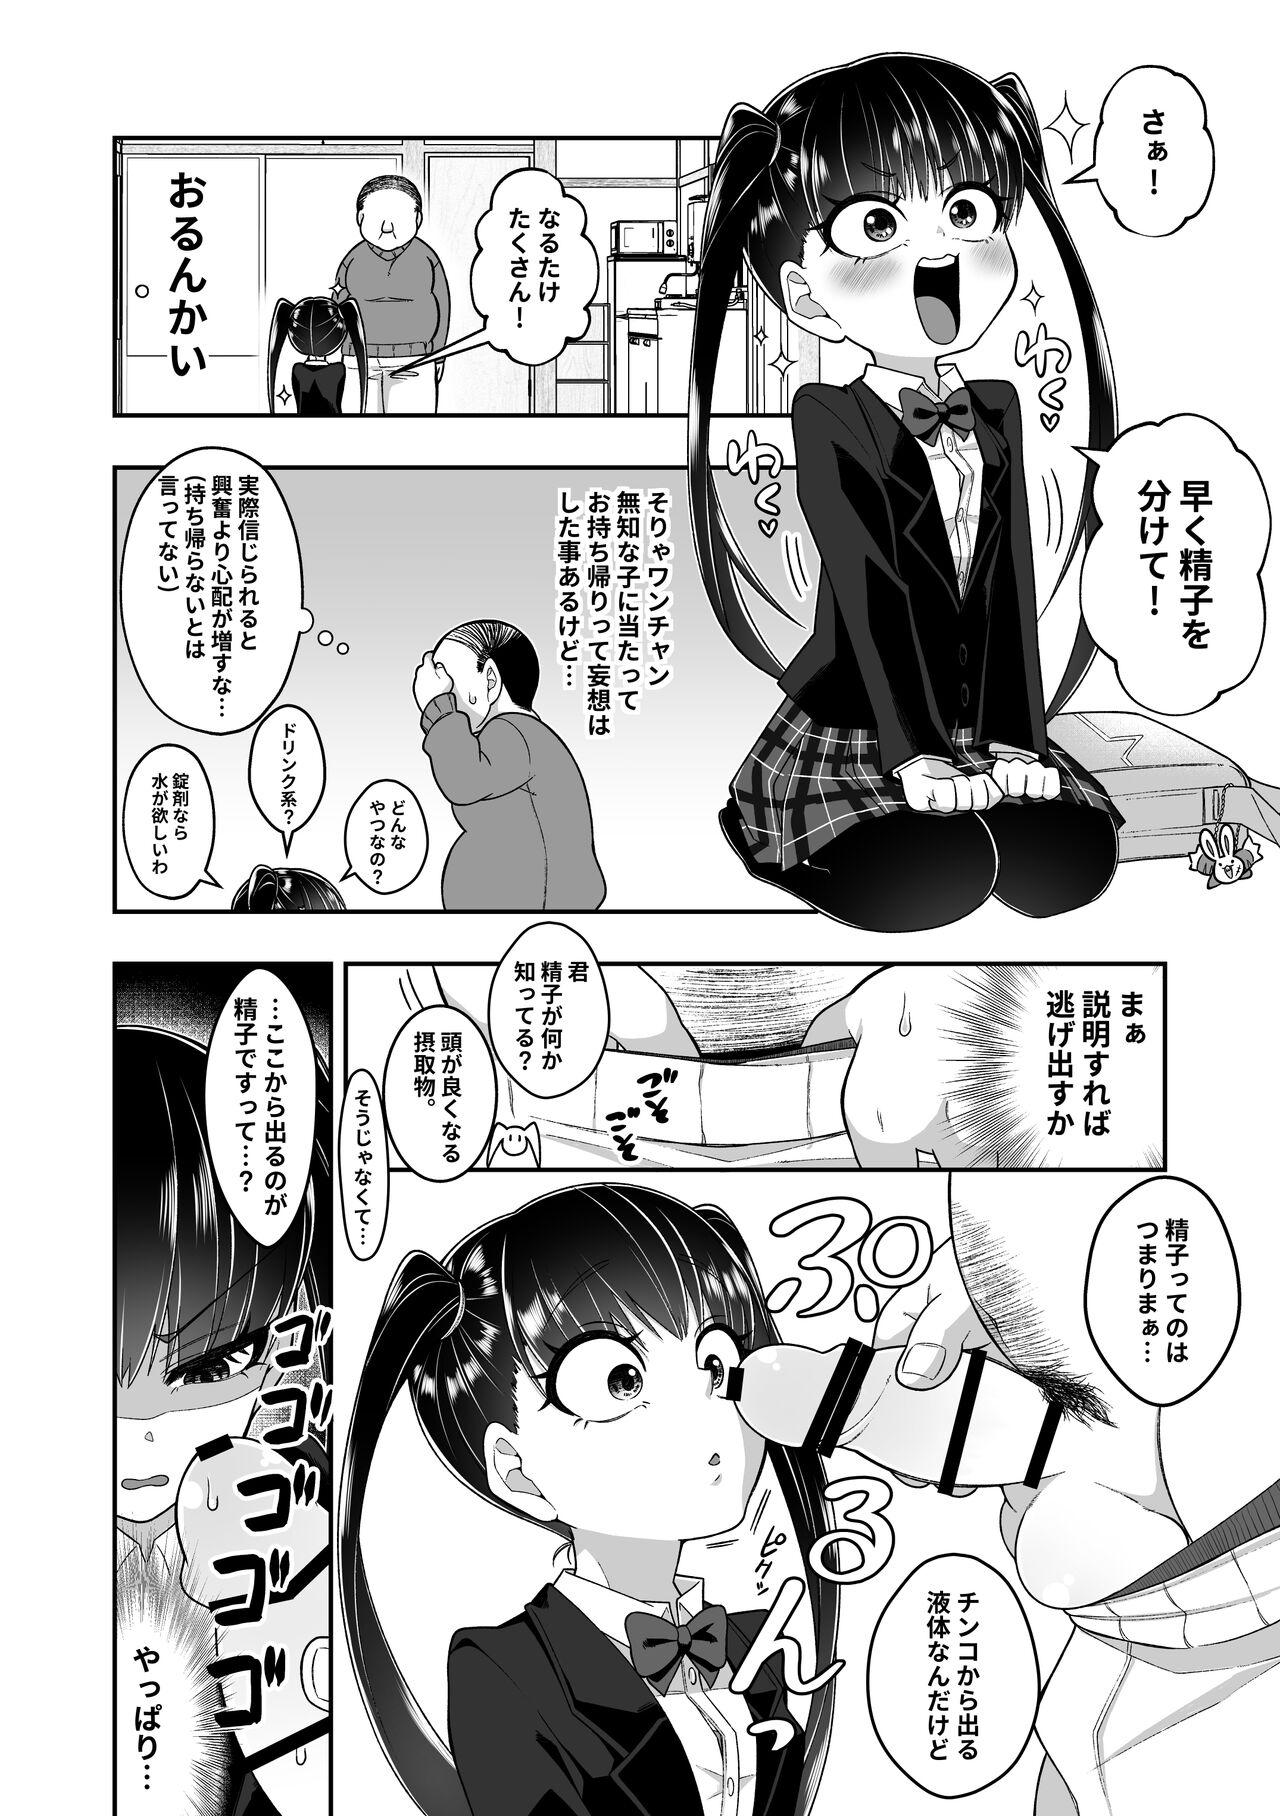 Girls Getting Fucked Seishi o nomeba Atama ga Yoku naru tte kikimashita Big breasts - Picture 3